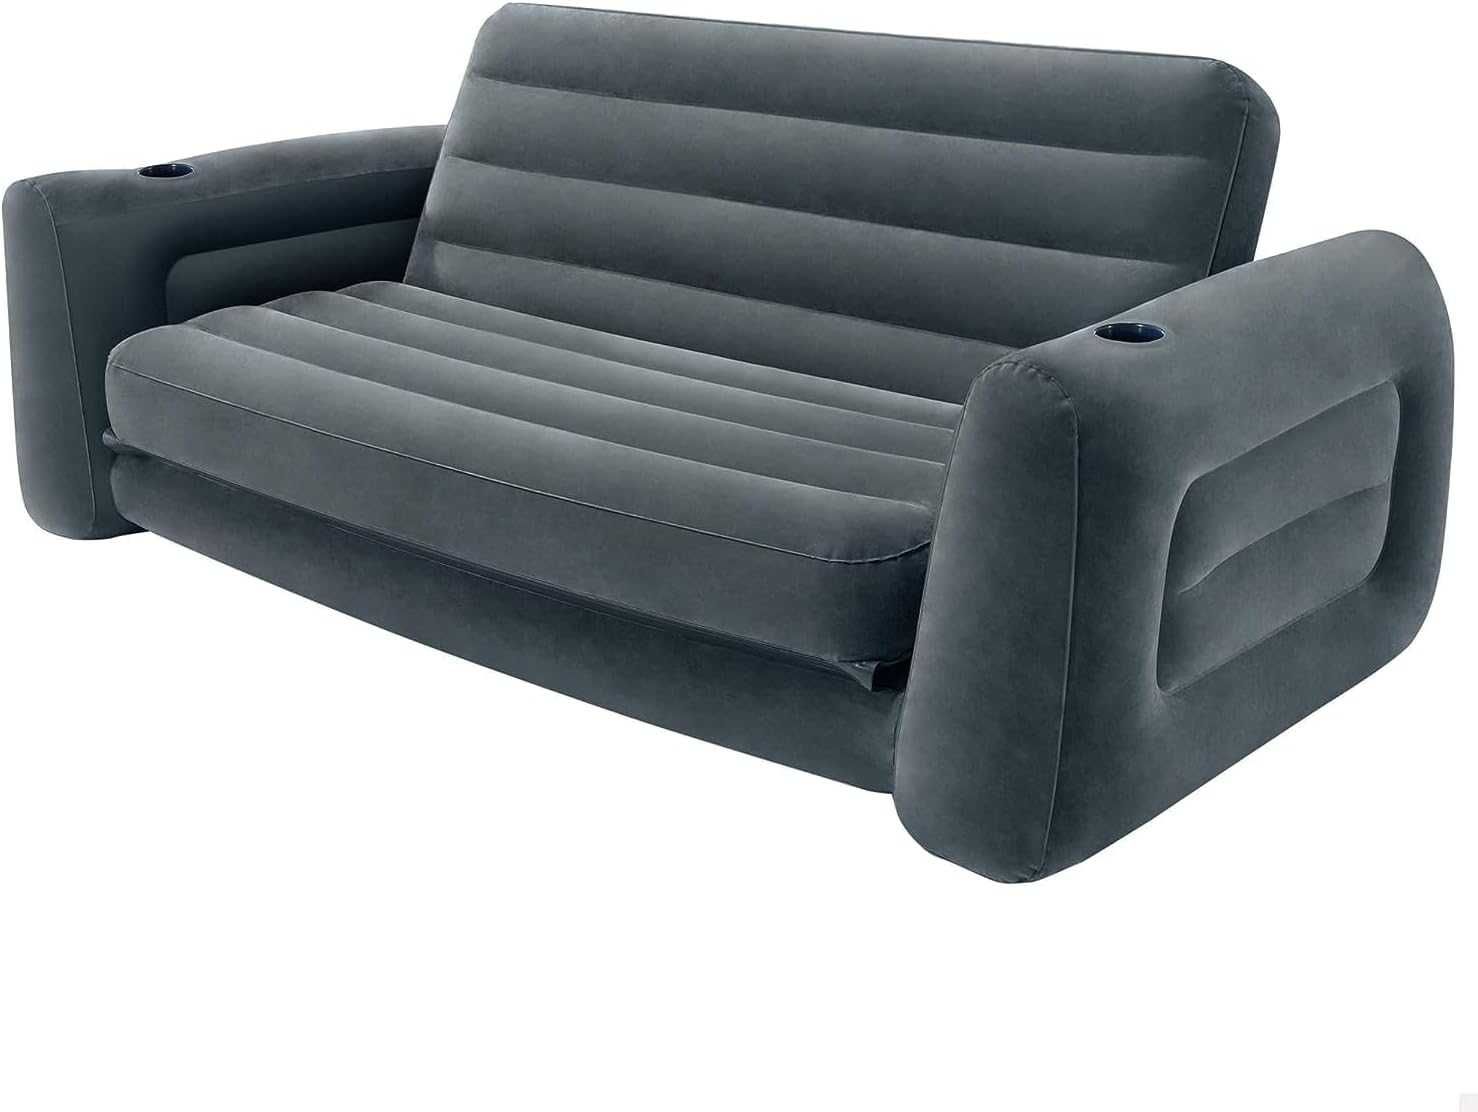 Sofa dmuchana solidna duża 231 x 203 x 66 cm odcienie szarości